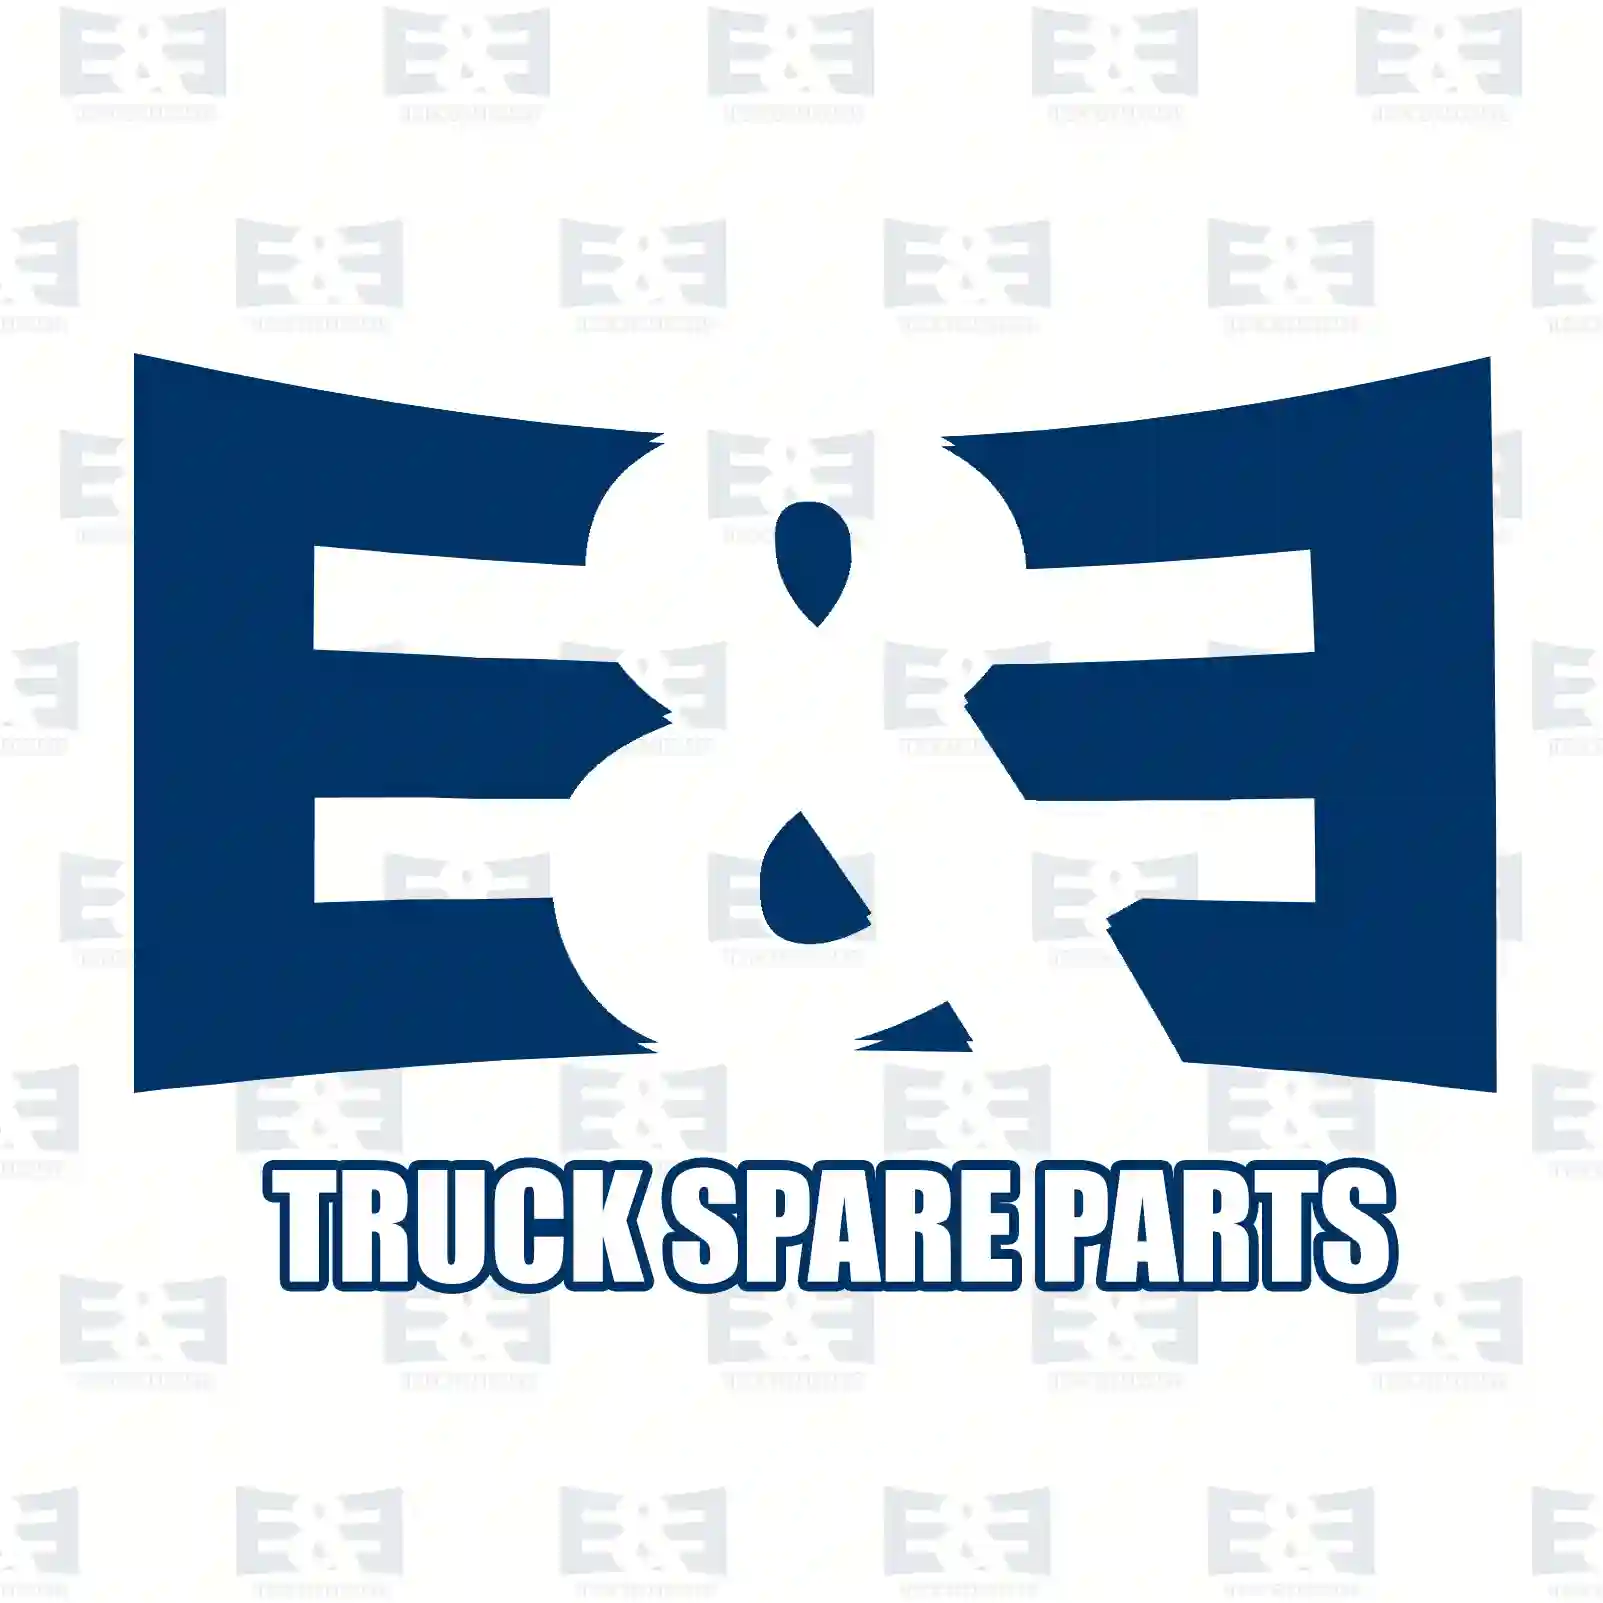 Propeller shaft, 2E2276872, 7420489408, 20489 ||  2E2276872 E&E Truck Spare Parts | Truck Spare Parts, Auotomotive Spare Parts Propeller shaft, 2E2276872, 7420489408, 20489 ||  2E2276872 E&E Truck Spare Parts | Truck Spare Parts, Auotomotive Spare Parts